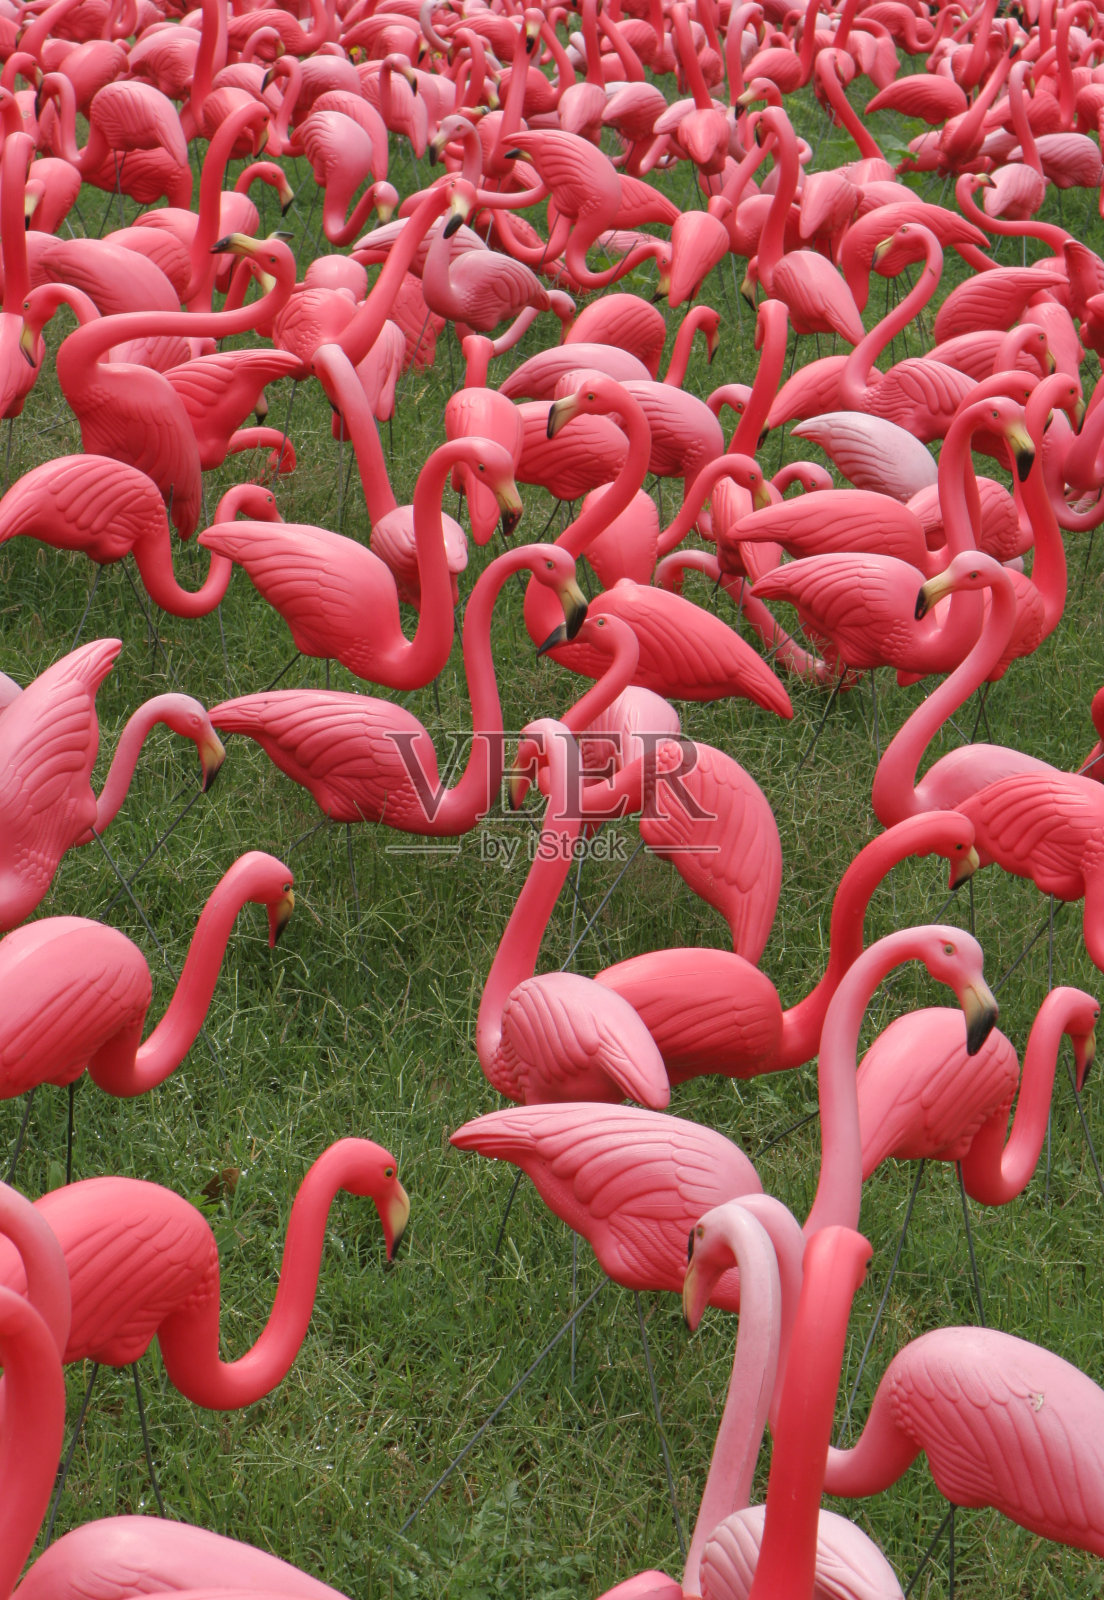 一群粉红色的火烈鸟在草地上照片摄影图片